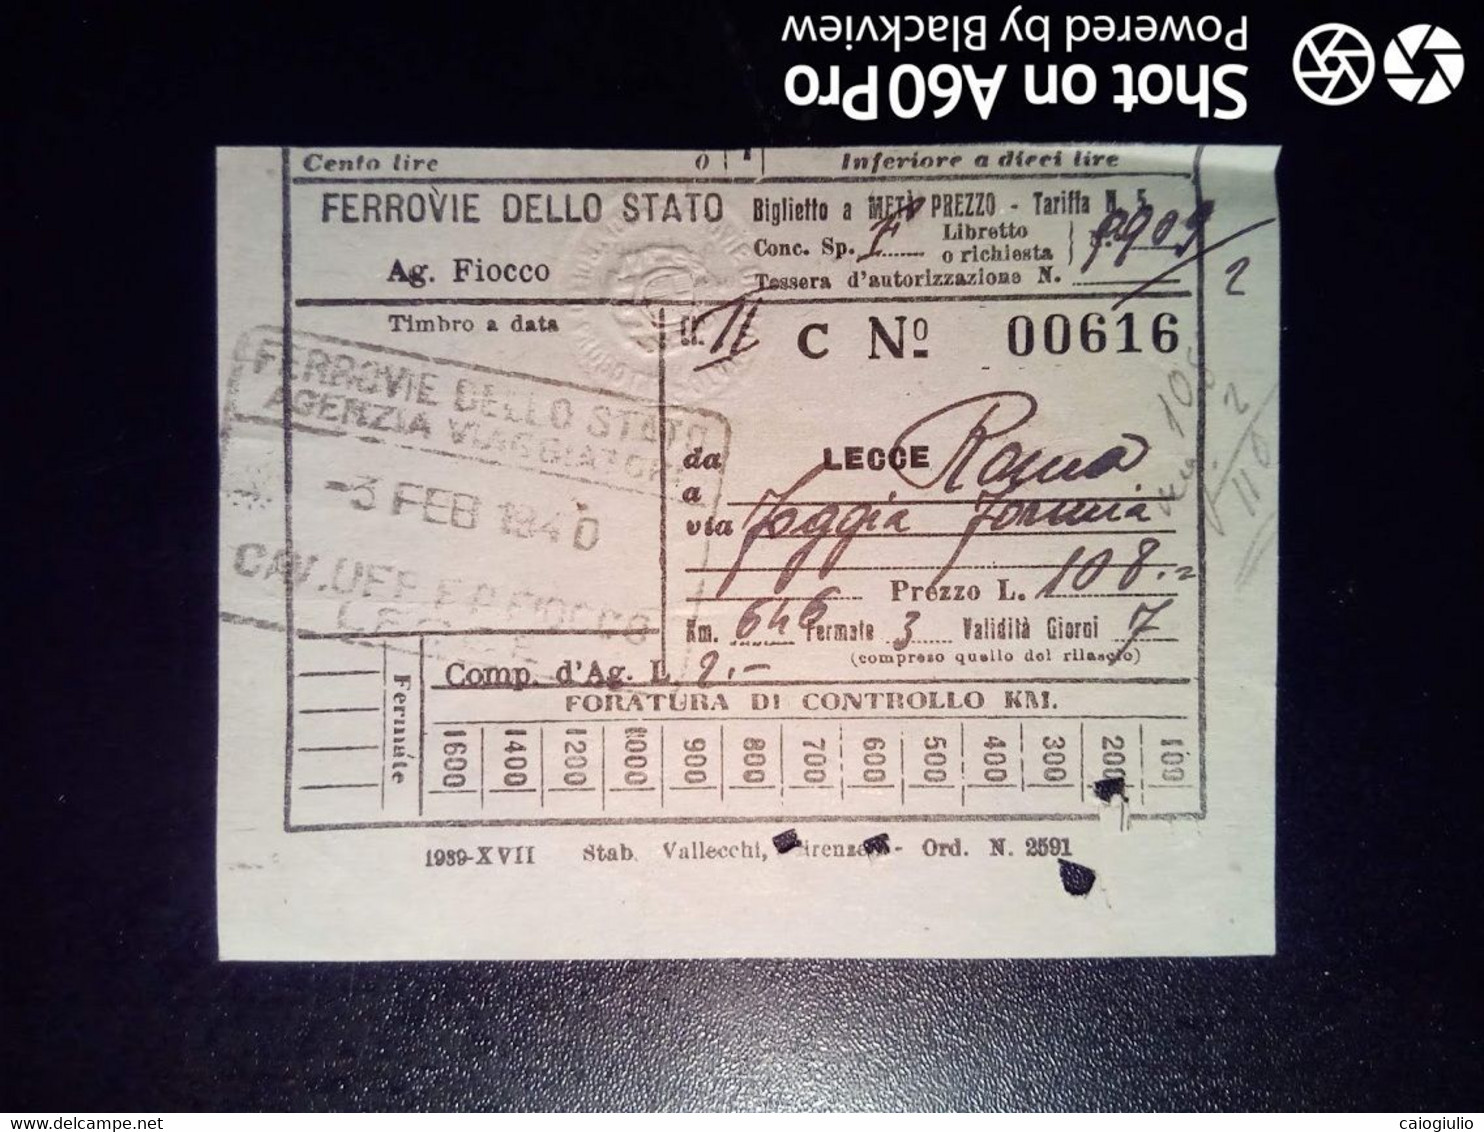 BIGLIETTO - TICKET F.S. - FERROVIE DELLO STATO - LECCE ROMA, VIA FOGGIA, FORMIA 2a CL - 1940 - Europe